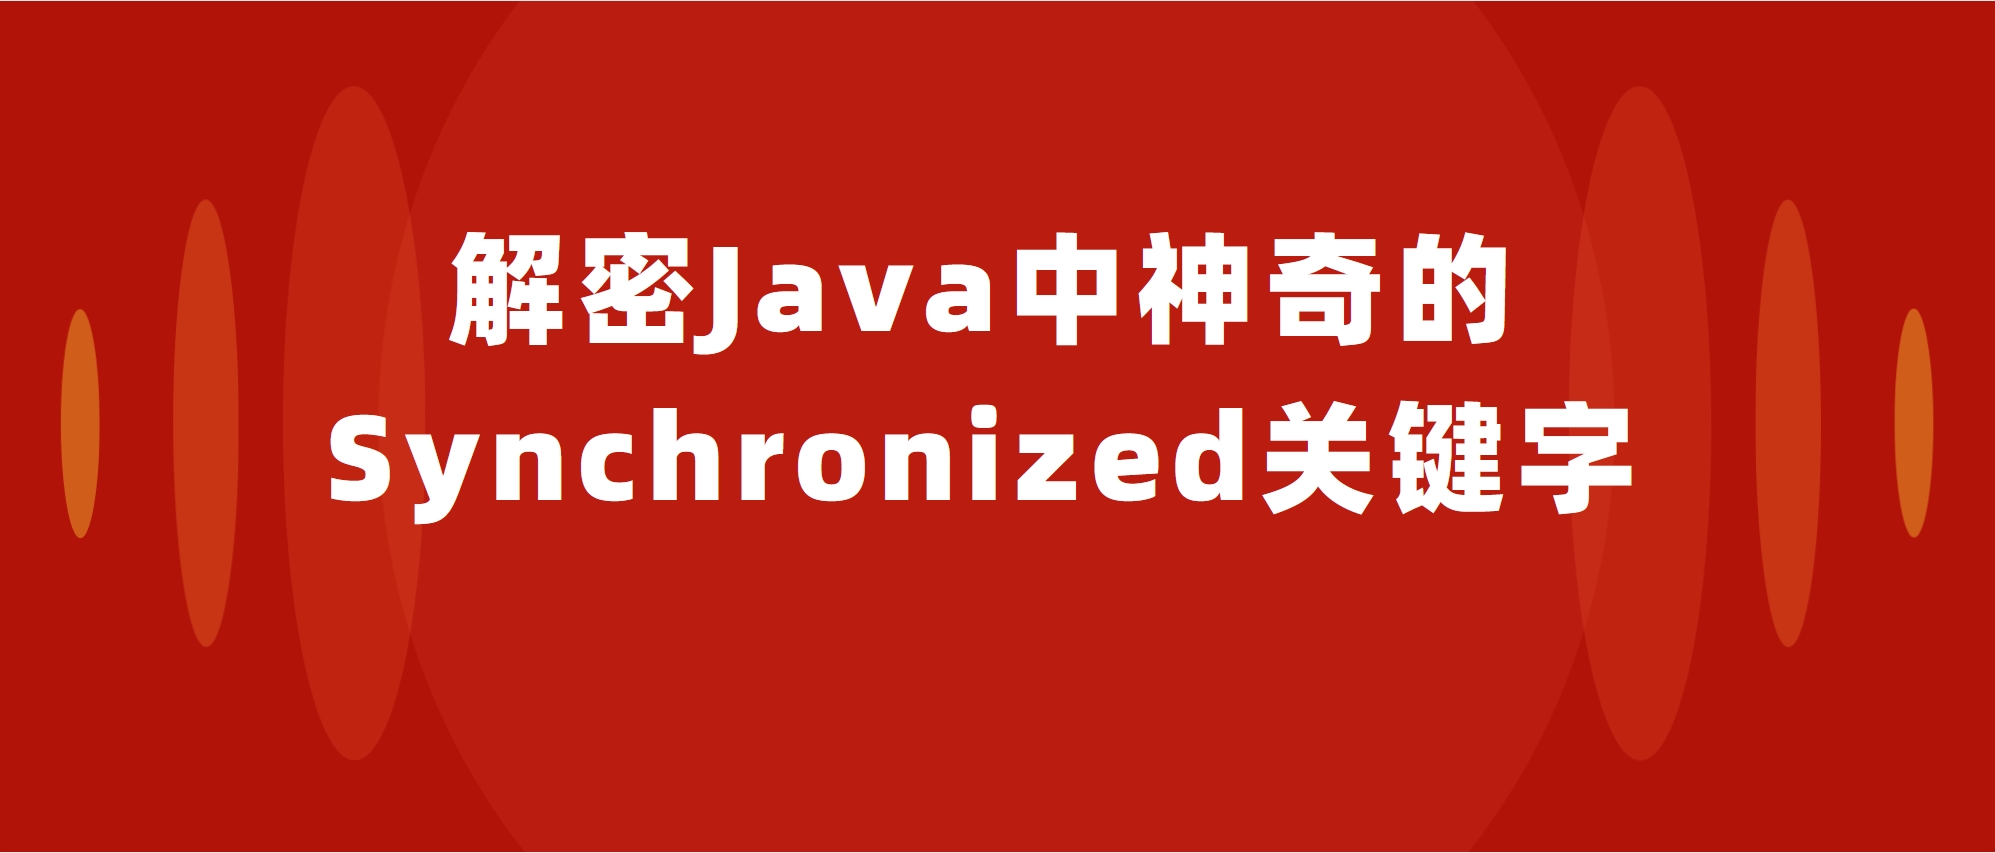 解密Java中神奇的Synchronized关键字